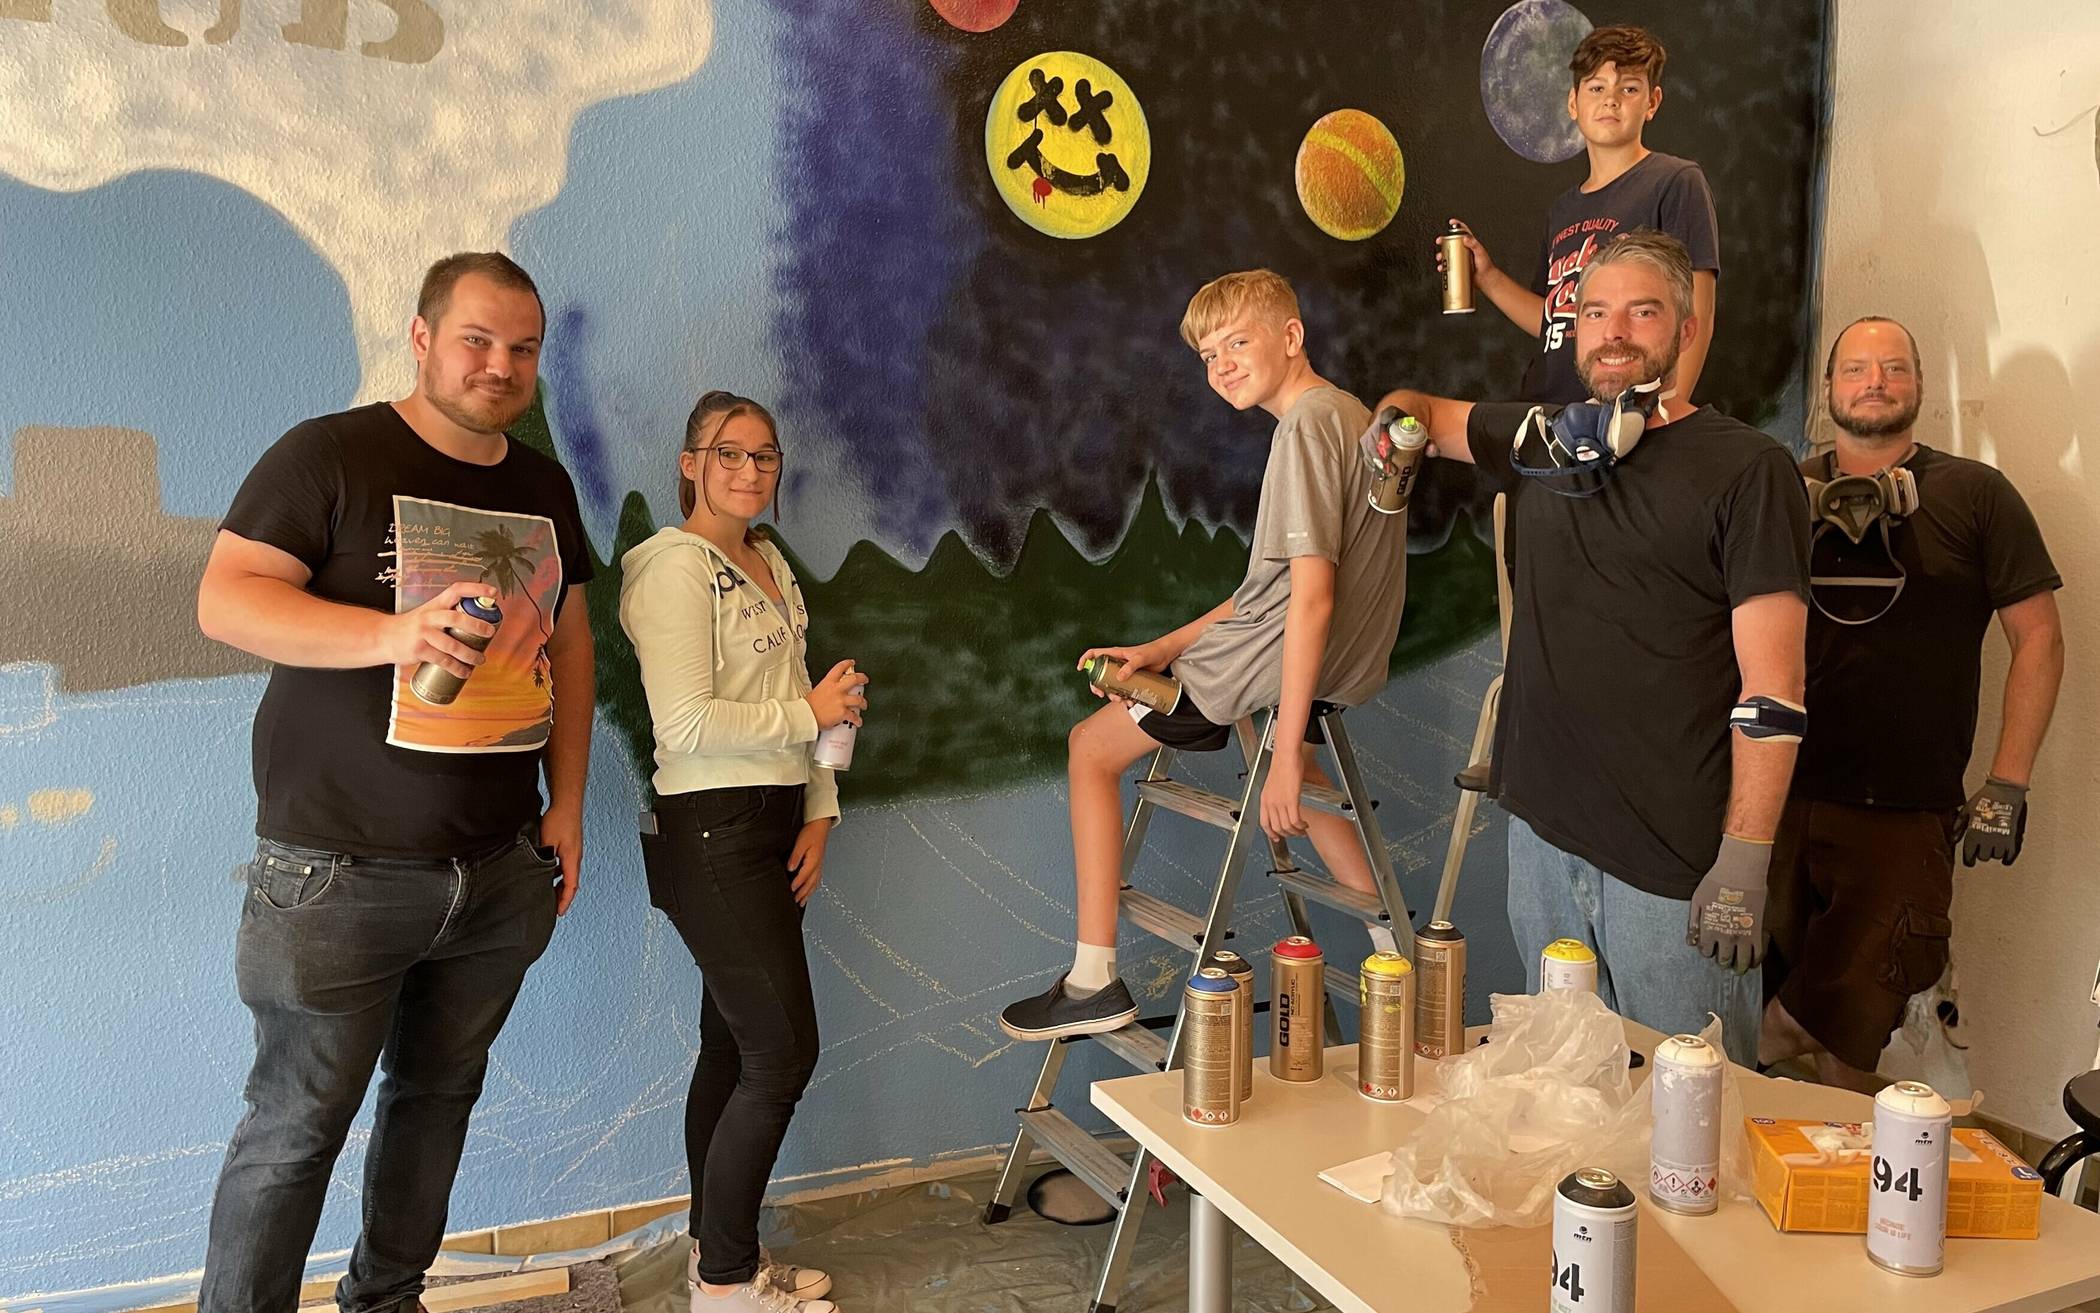  Patrick Nilgen (links) hatte zum Graffiti-Workshop eingeladen: Mit dabei sechs Kinder ab zehn Jahren, die beiden Künstler (rechts) sowie zwei erwachsene Teilnehmerinnen.&nbsp; 